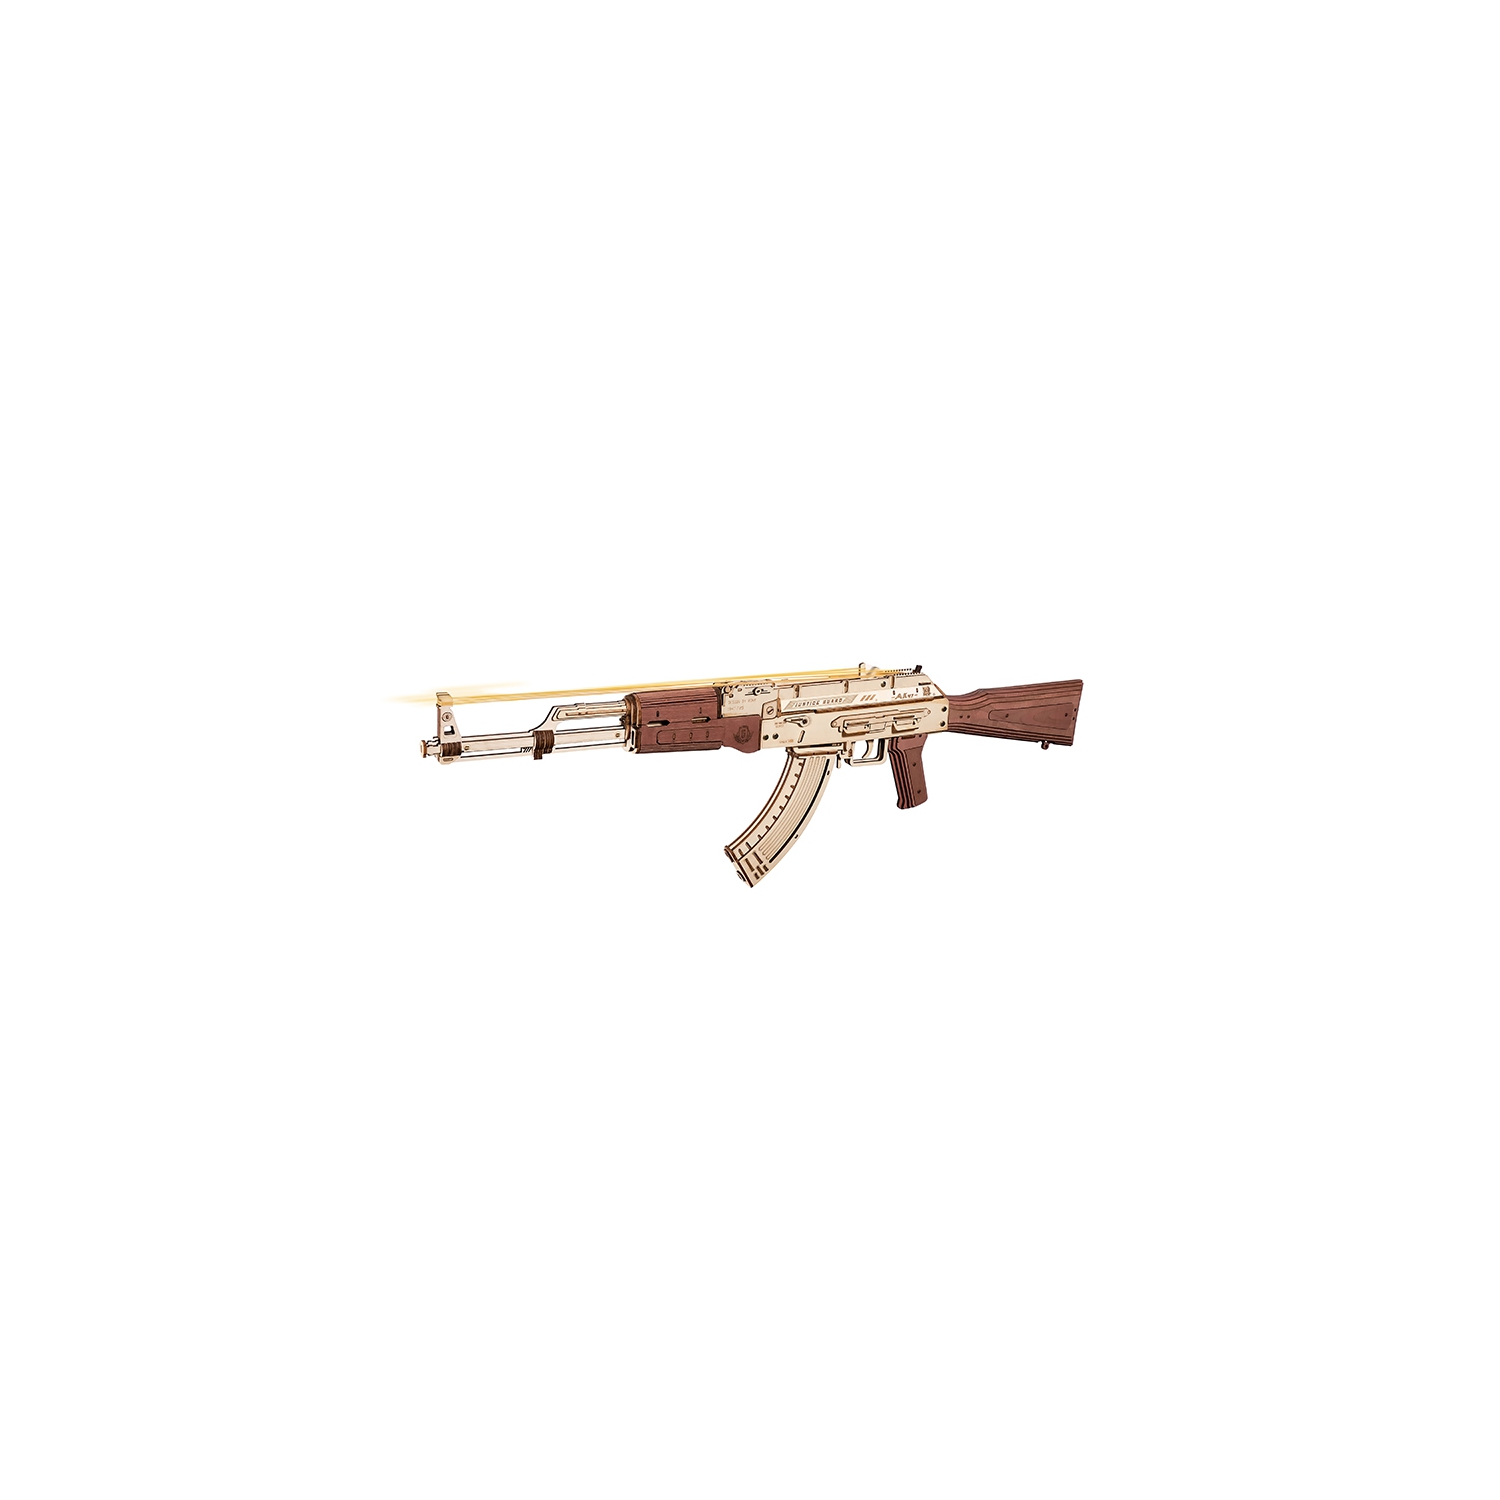 DIY AK-47 Assault Rifle 3D Wooden Puzzle - 315 Pieces